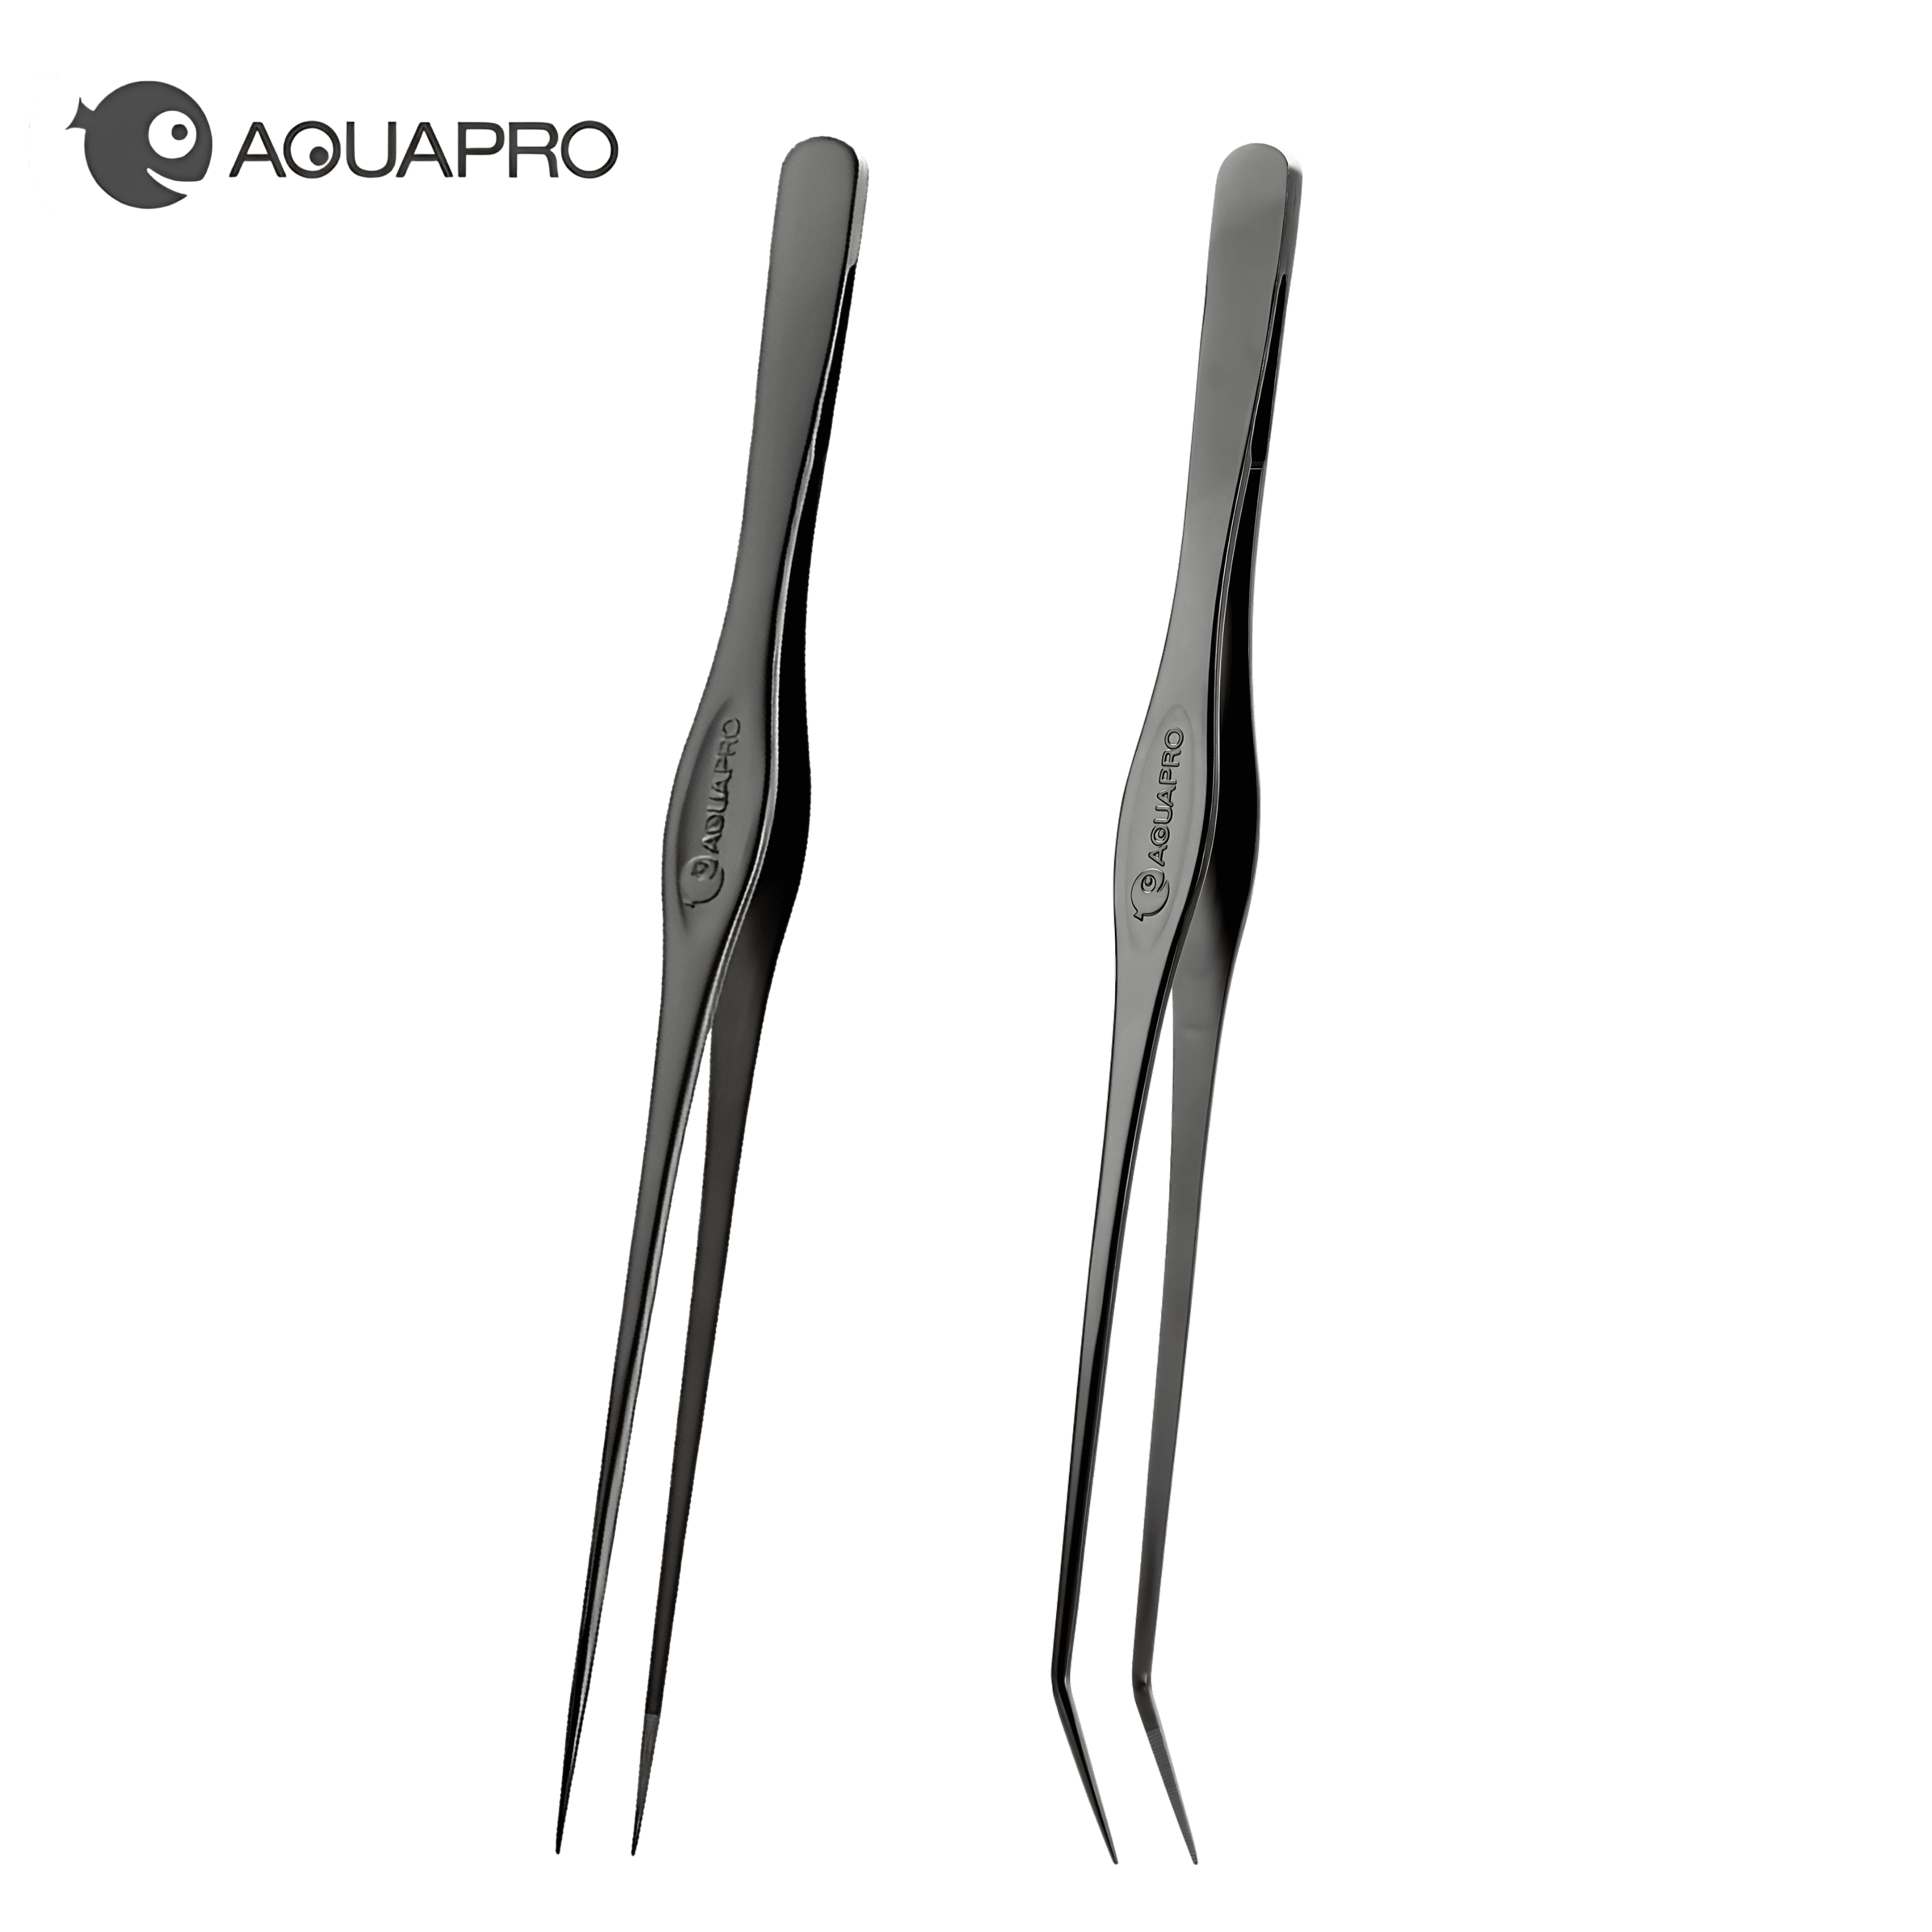 Aquapro Pro Tweezers - Black